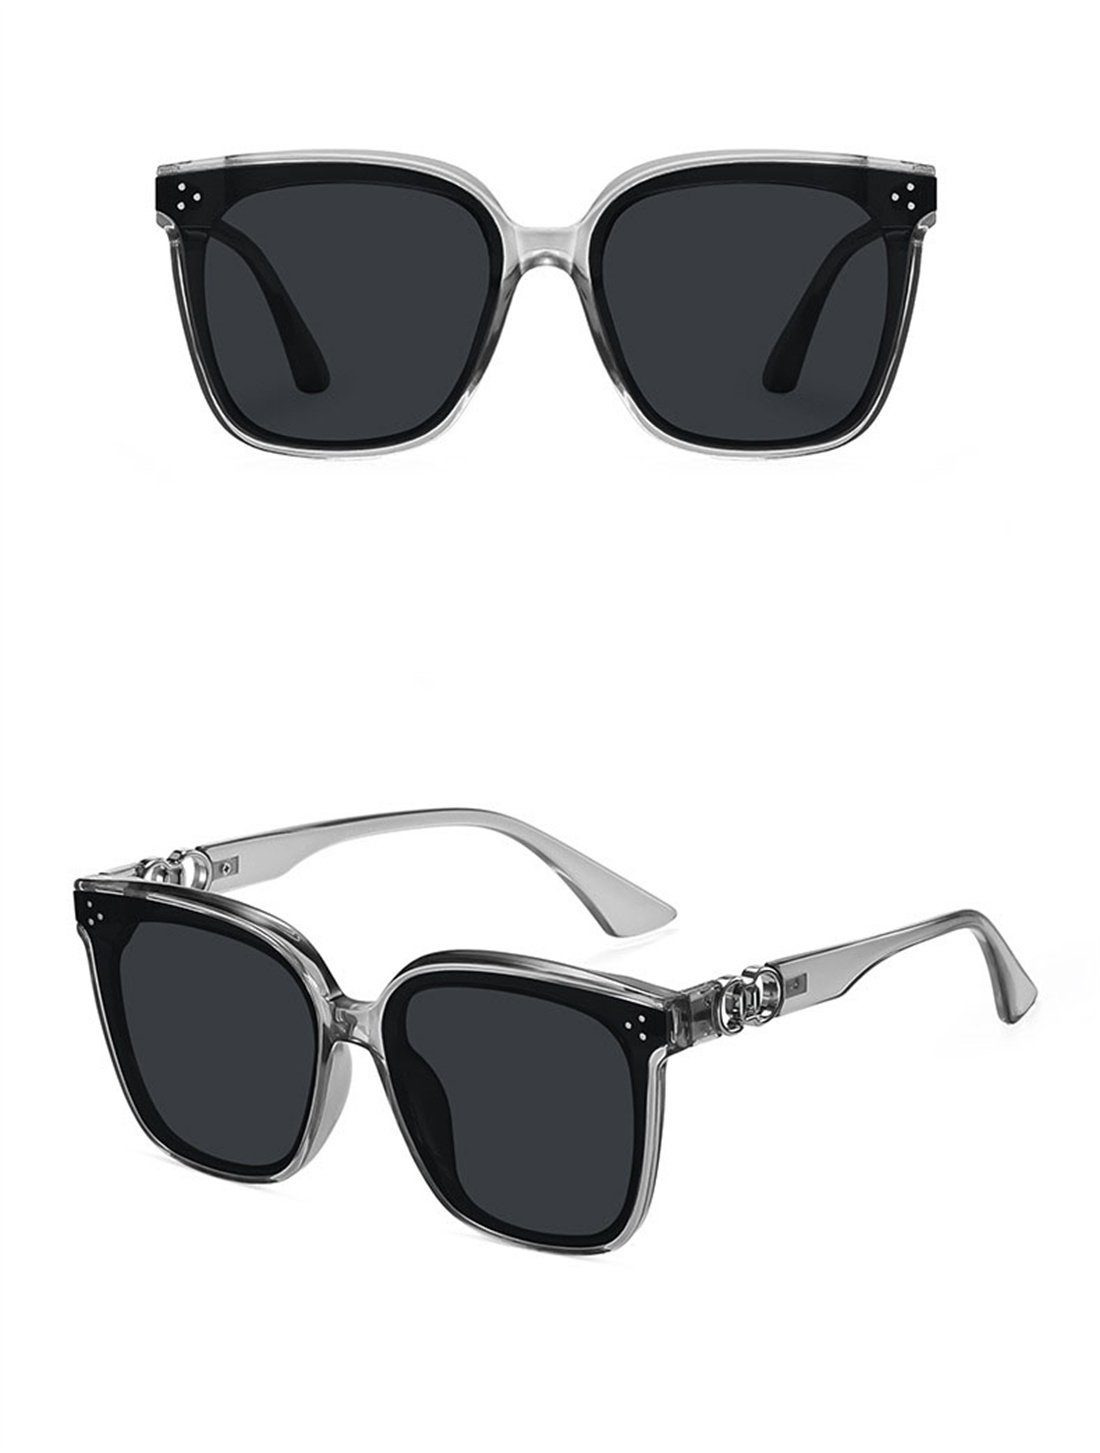 und DÖRÖY Frauen, für Sonnenbrille Outdoor-Sonnenbrillen Männer Mode-Sonnenbrillen